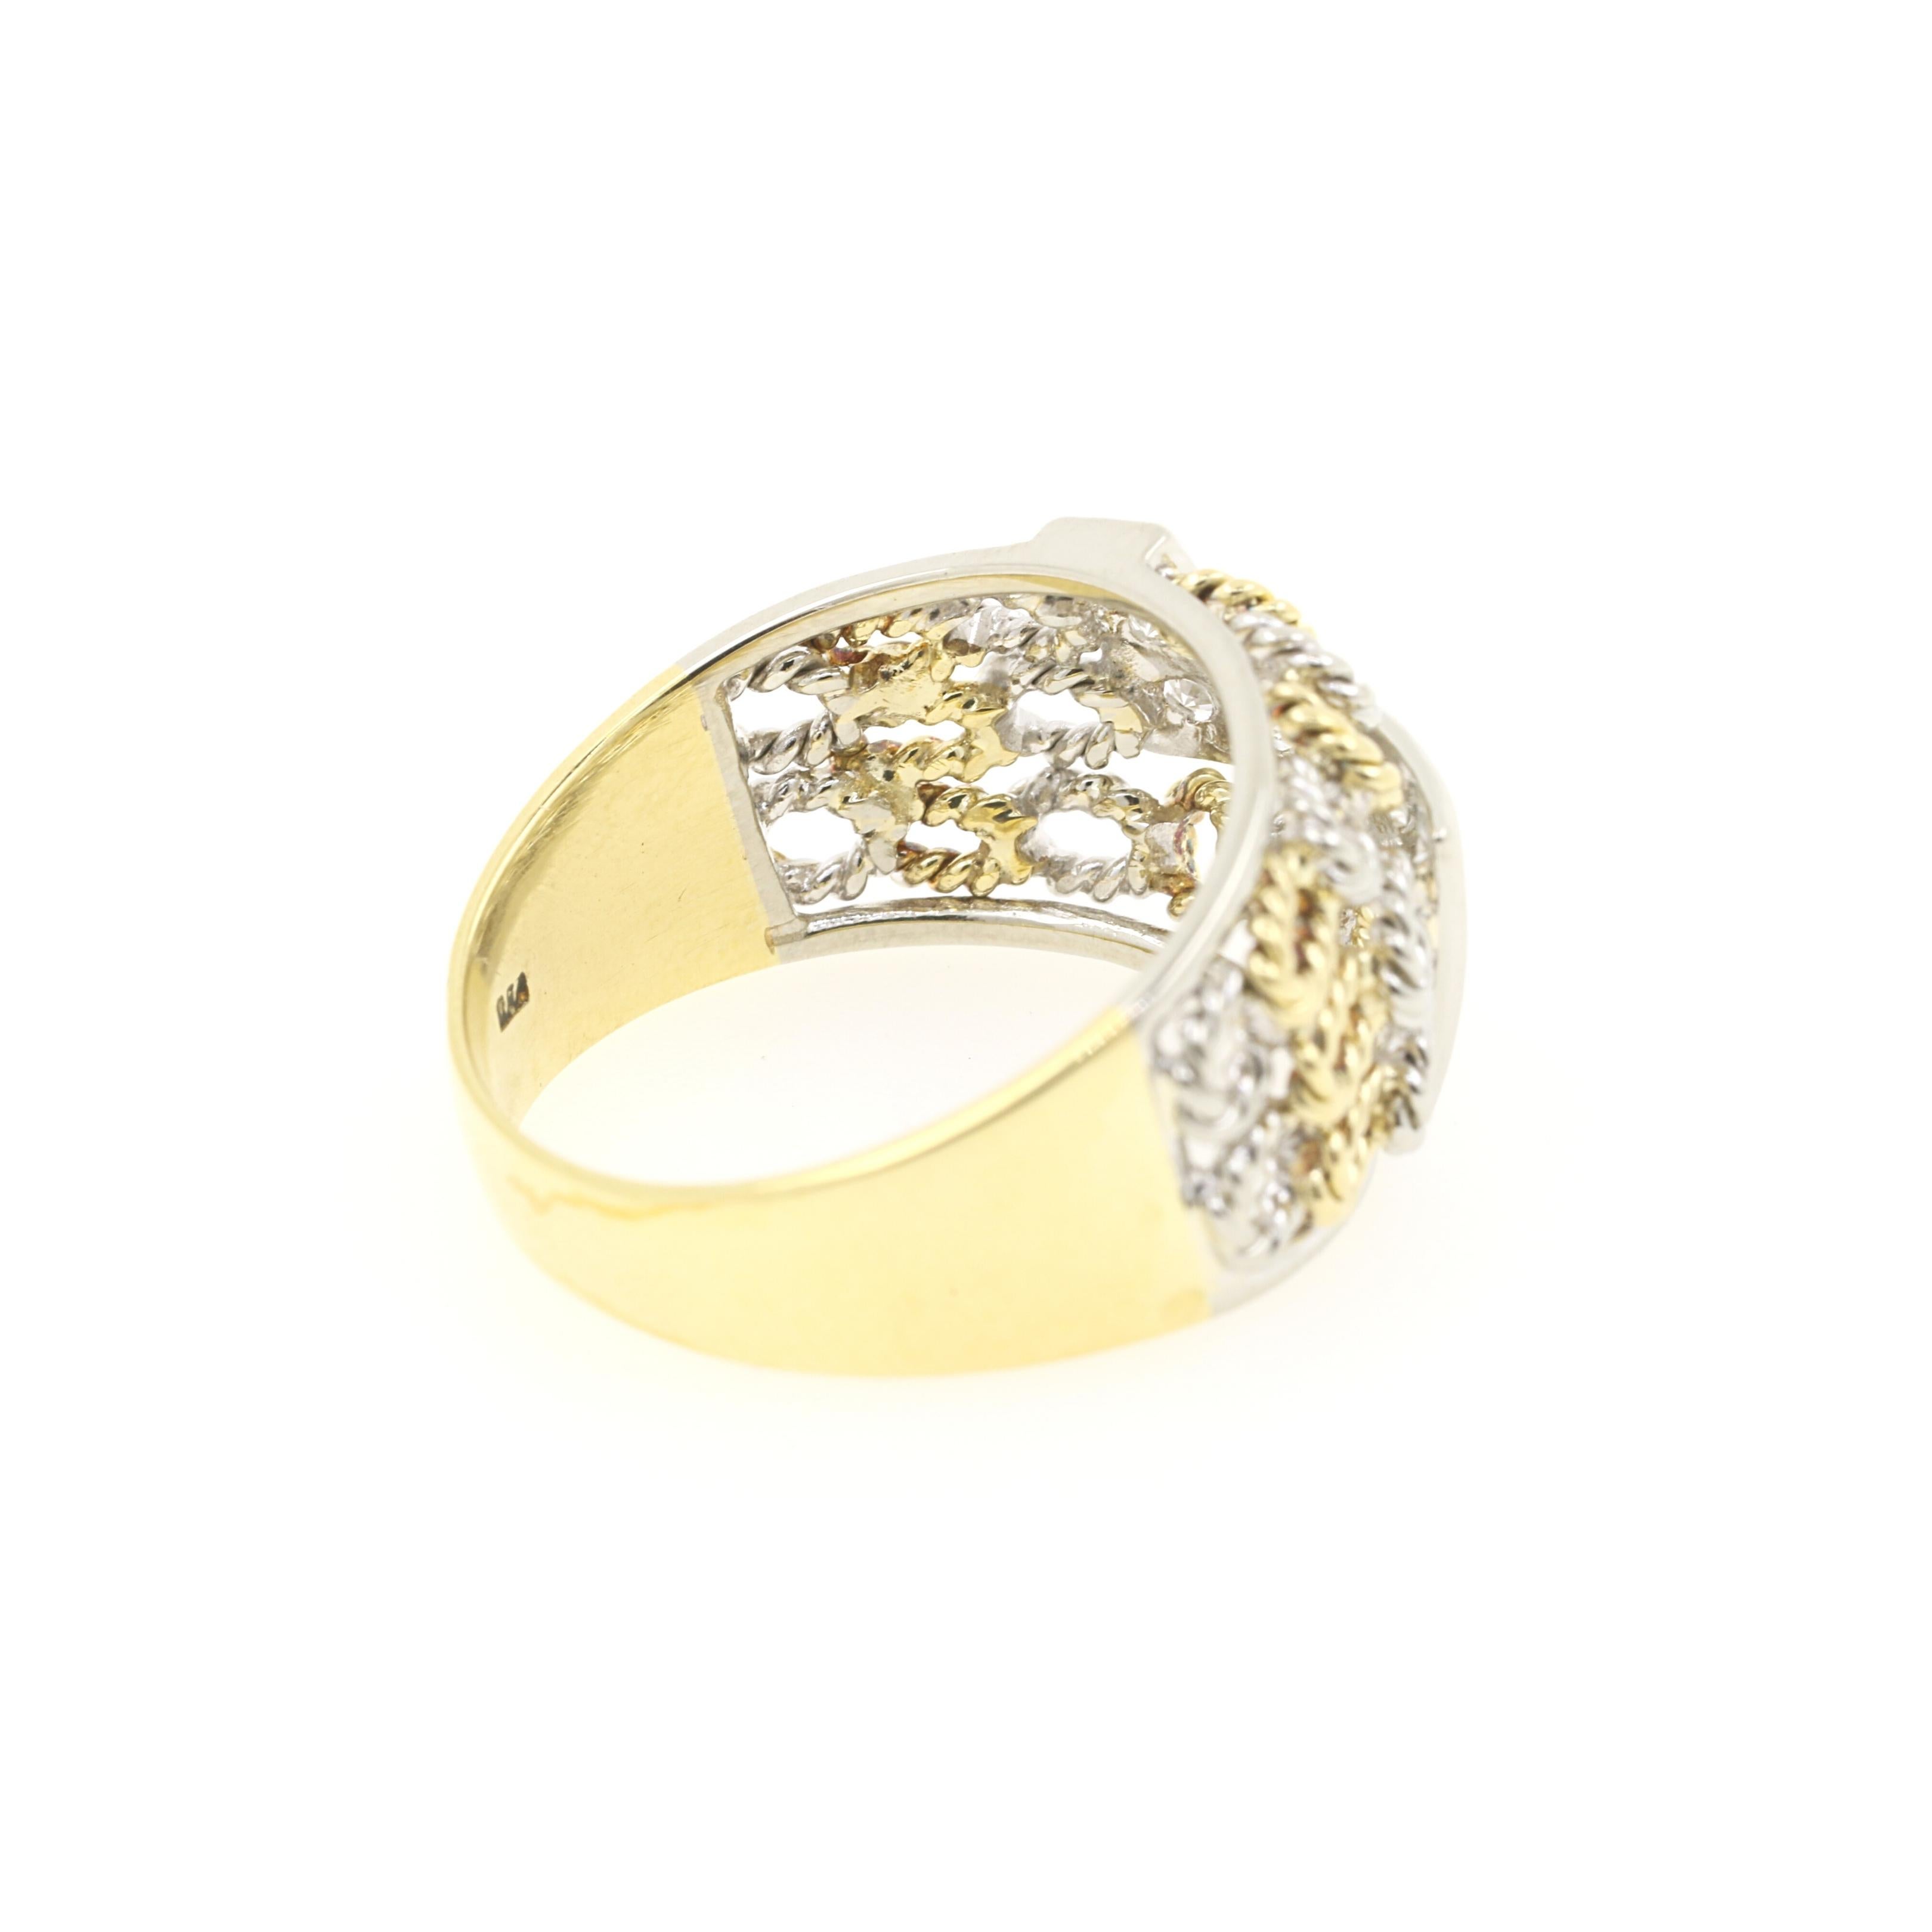 Modern 0.20 Carat Diamonds Band Ring on 18 Karat Yellow and White Gold